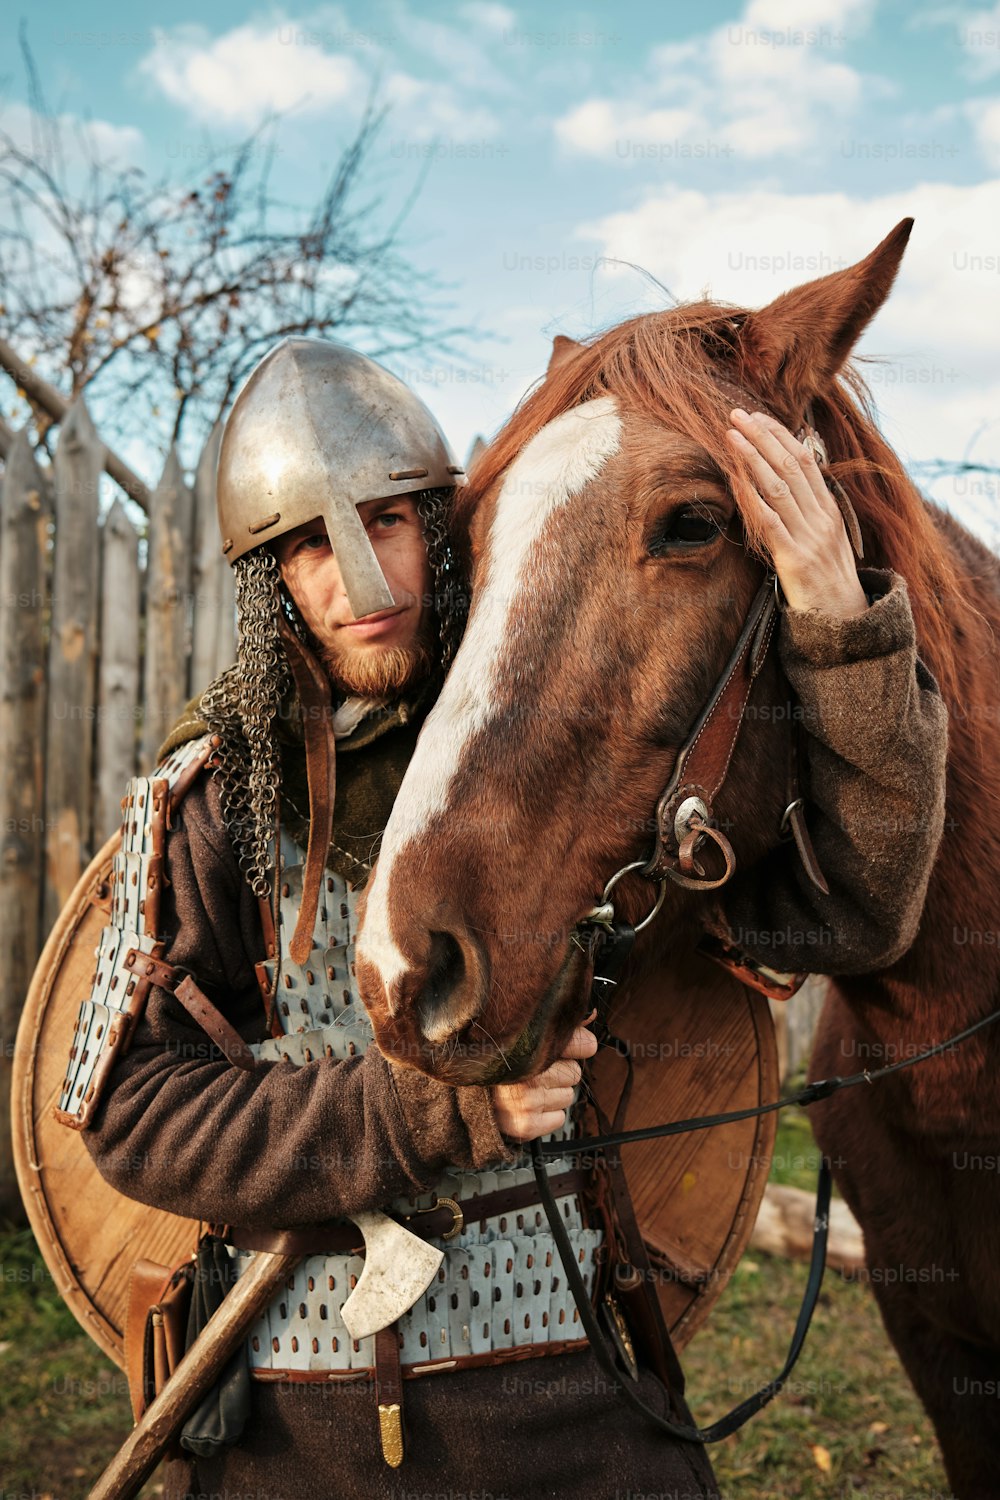 Un homme portant un casque se tient à côté d’un cheval